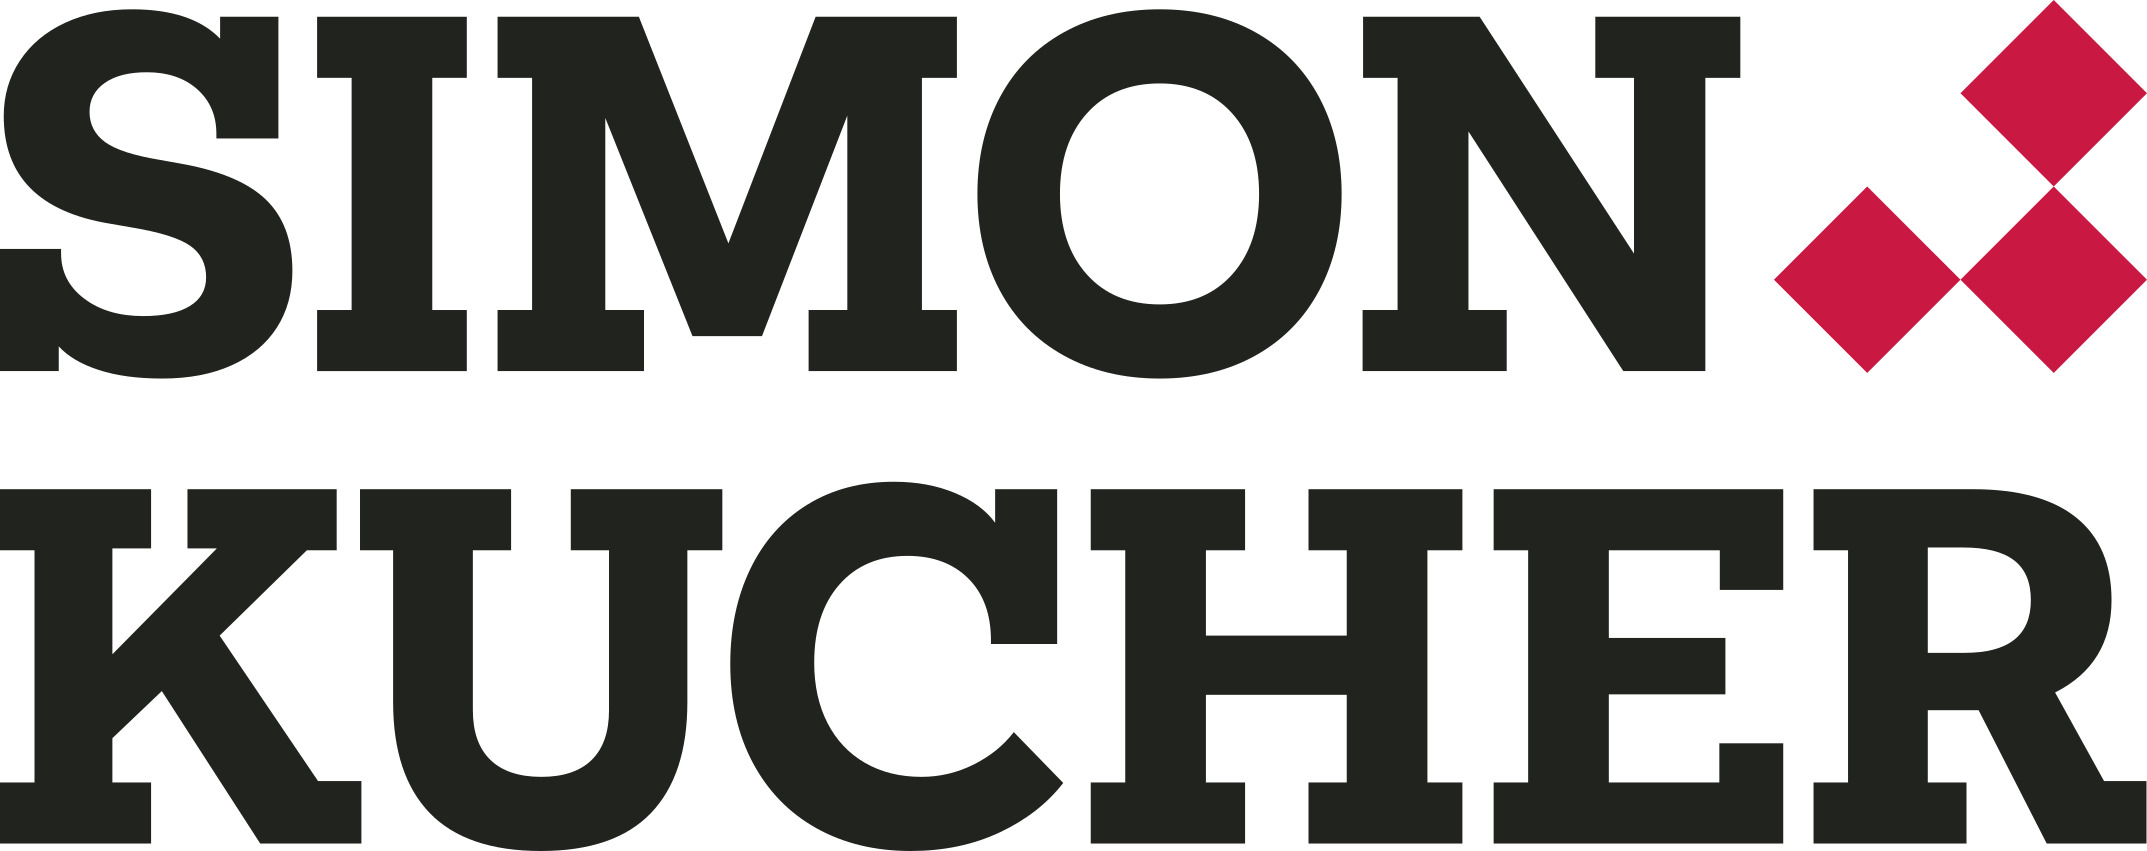 Simon-Kucher & Partners - Profil bei squeaker.net